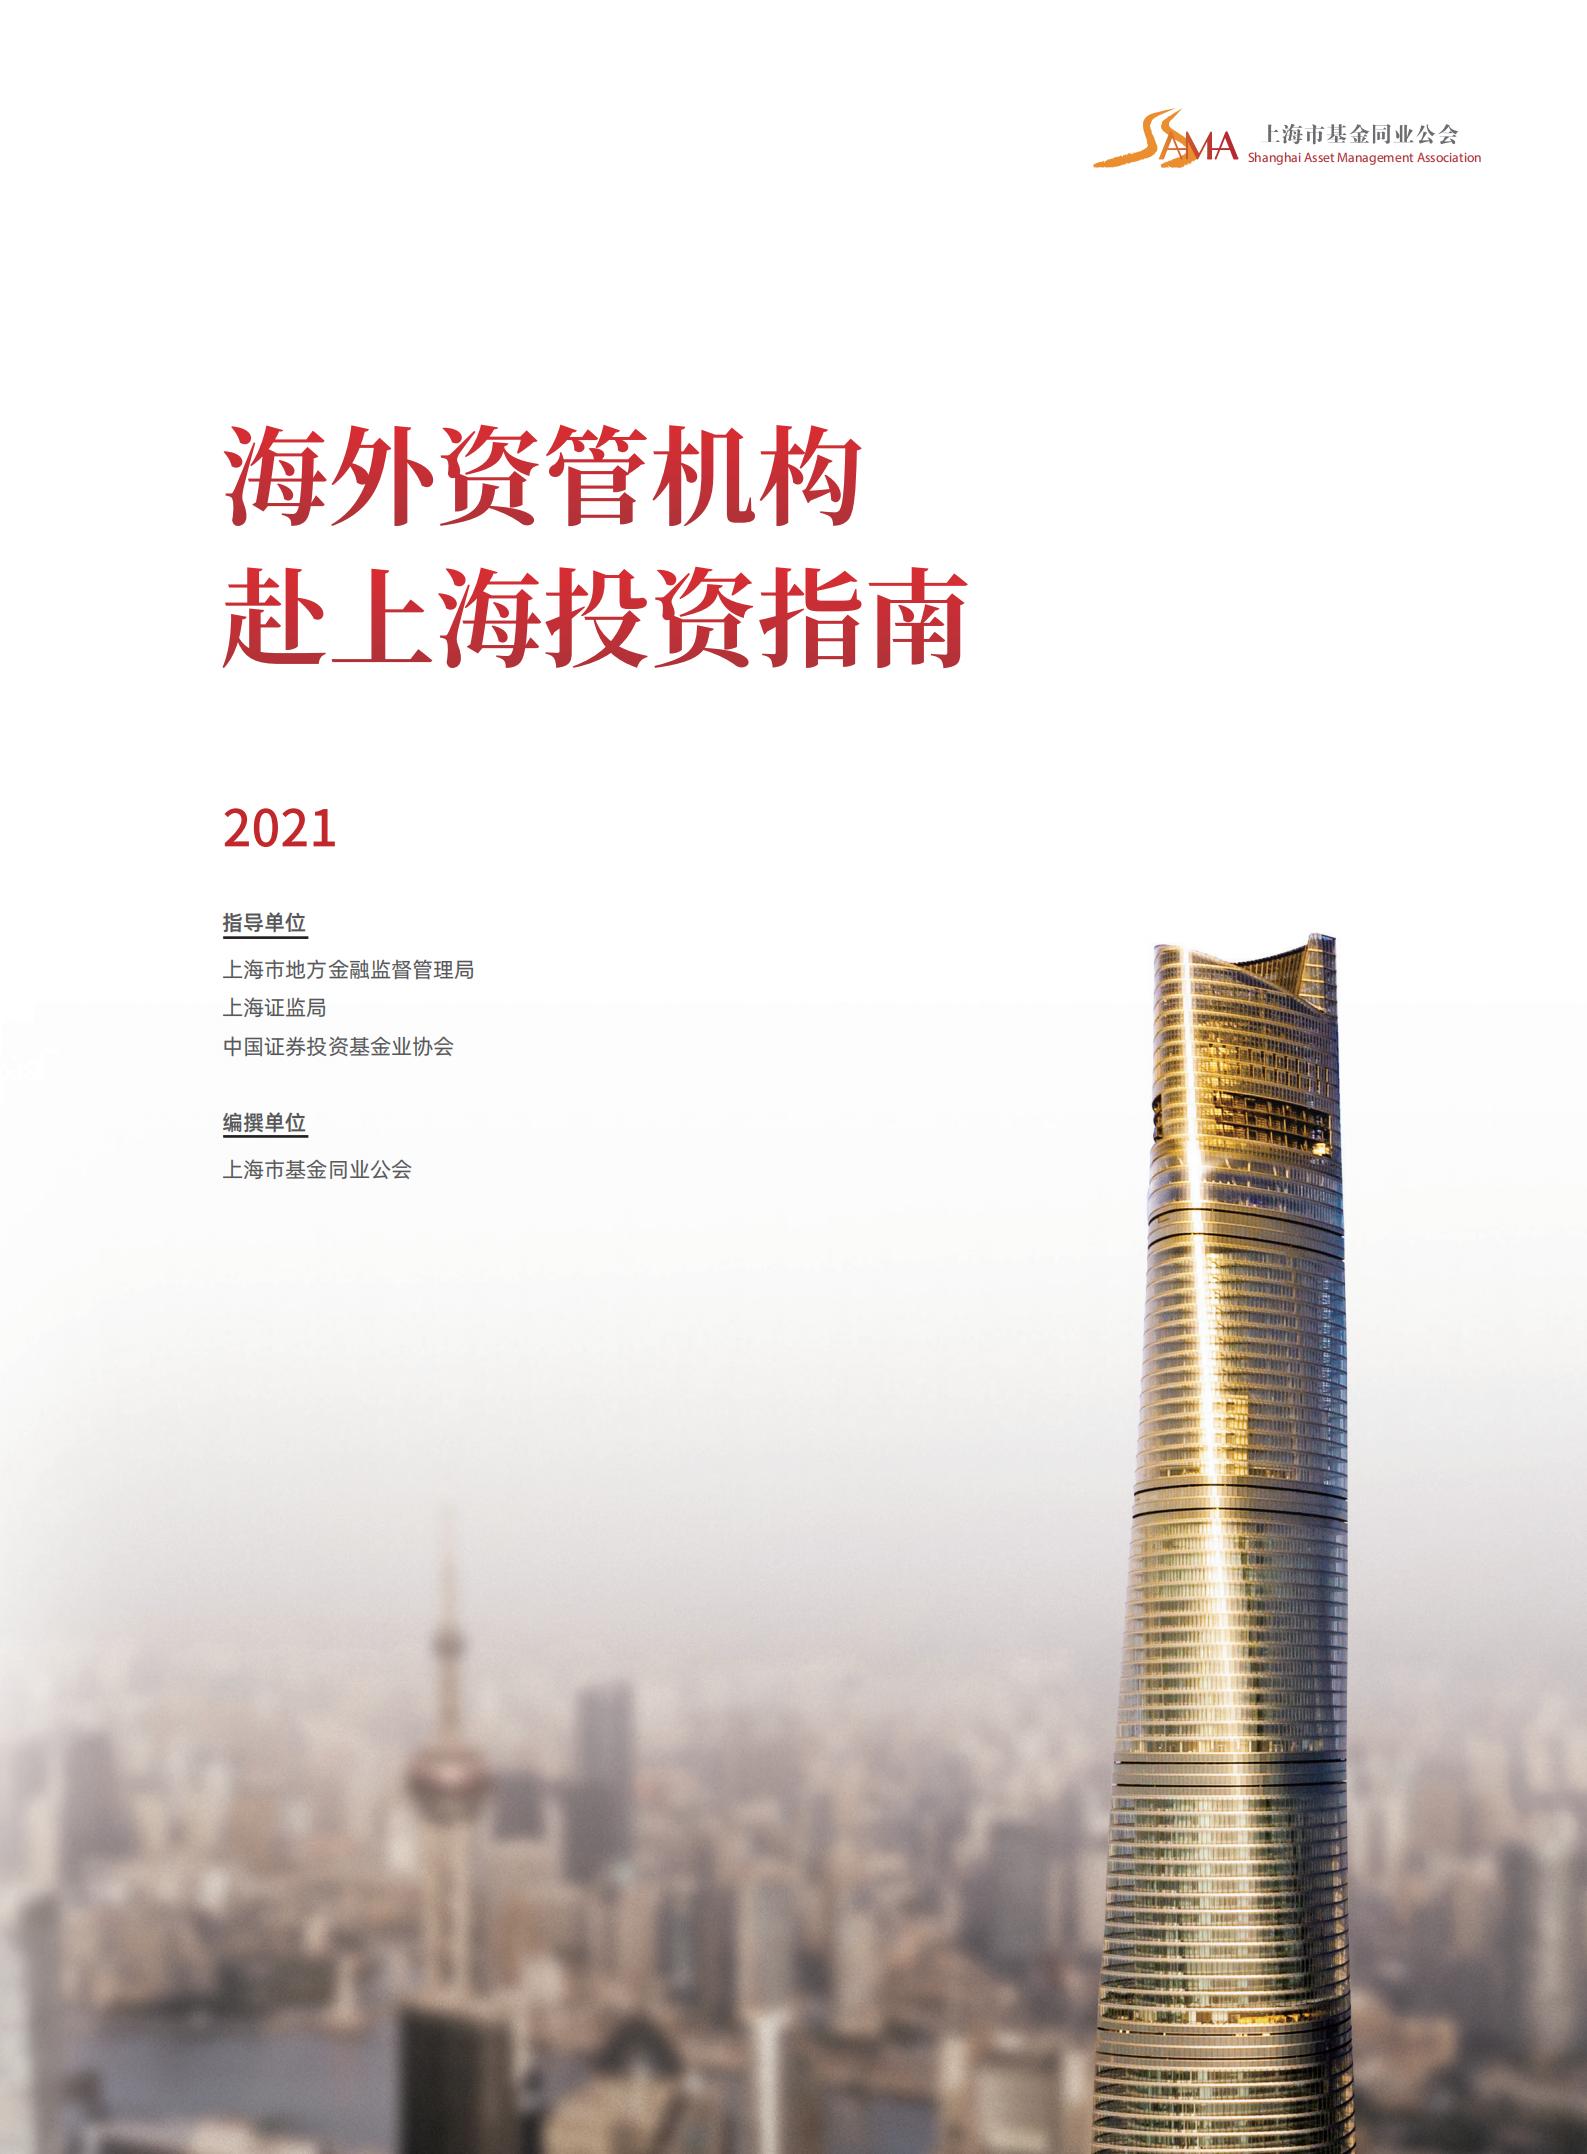 海外资管机构赴上海投资指南2021中文版_00.jpg